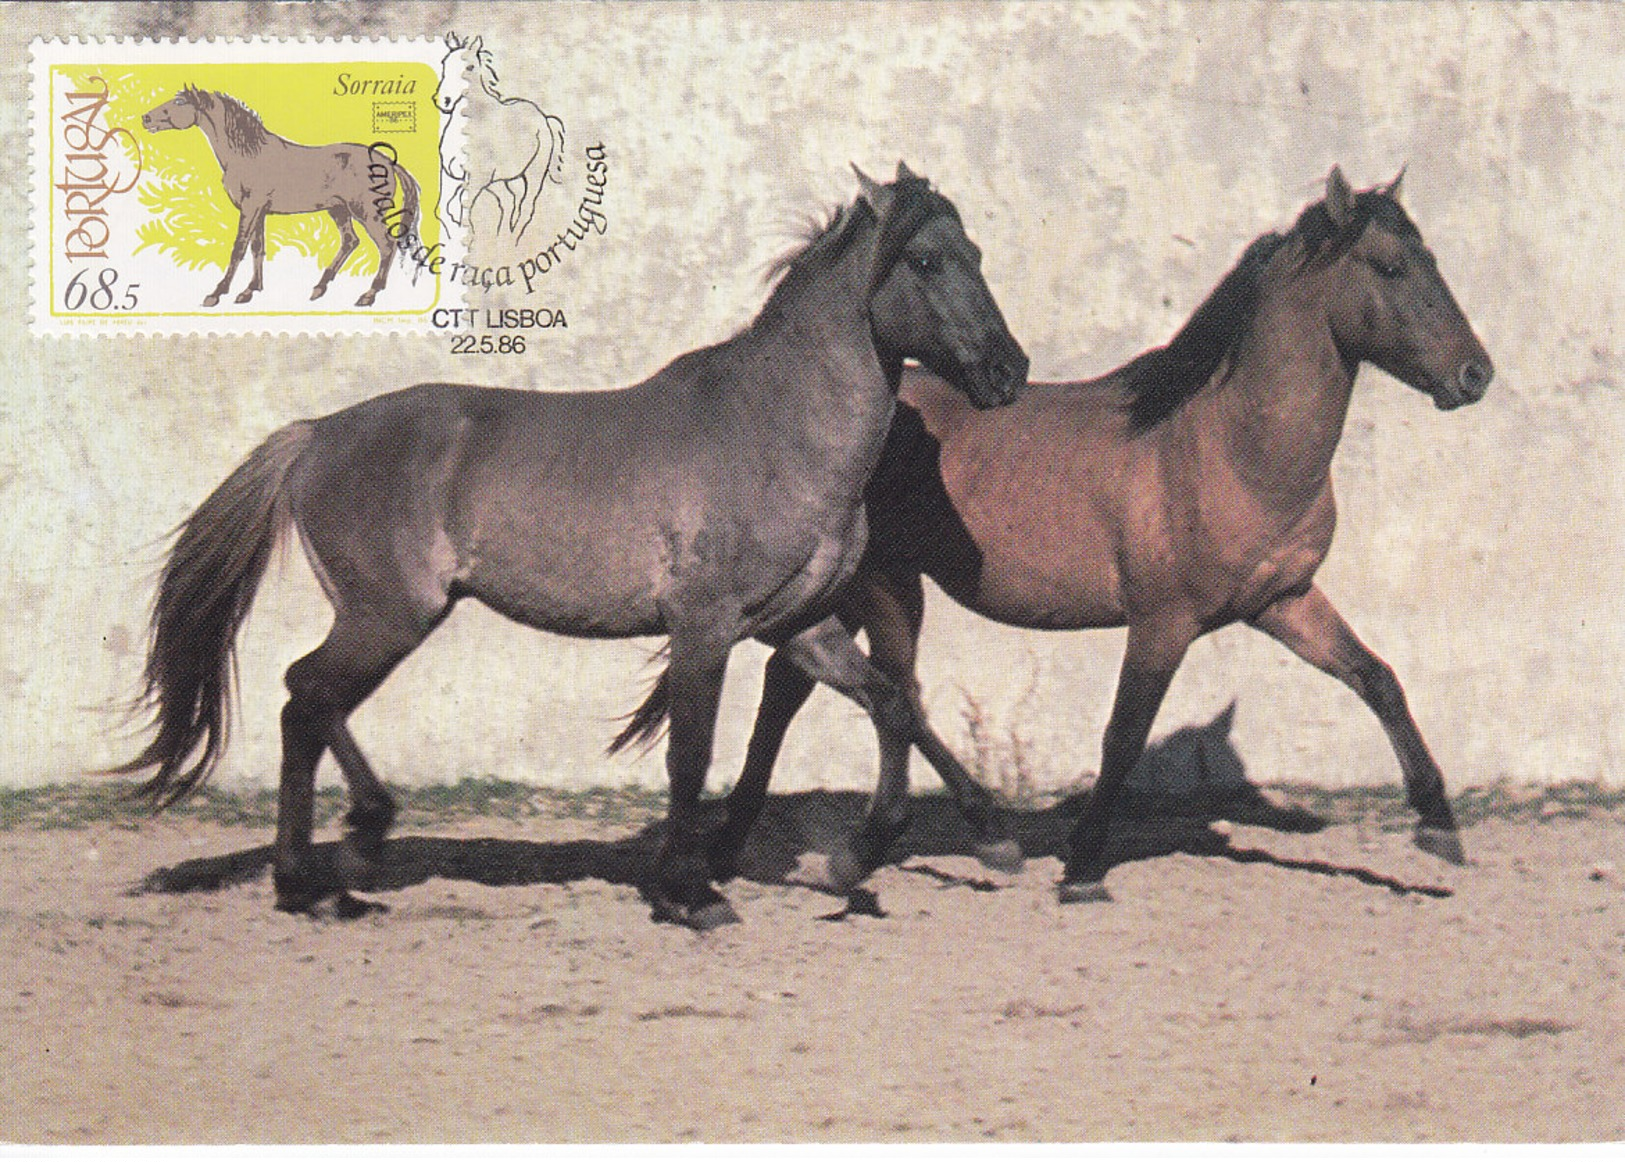 THE HORSE - Caballos